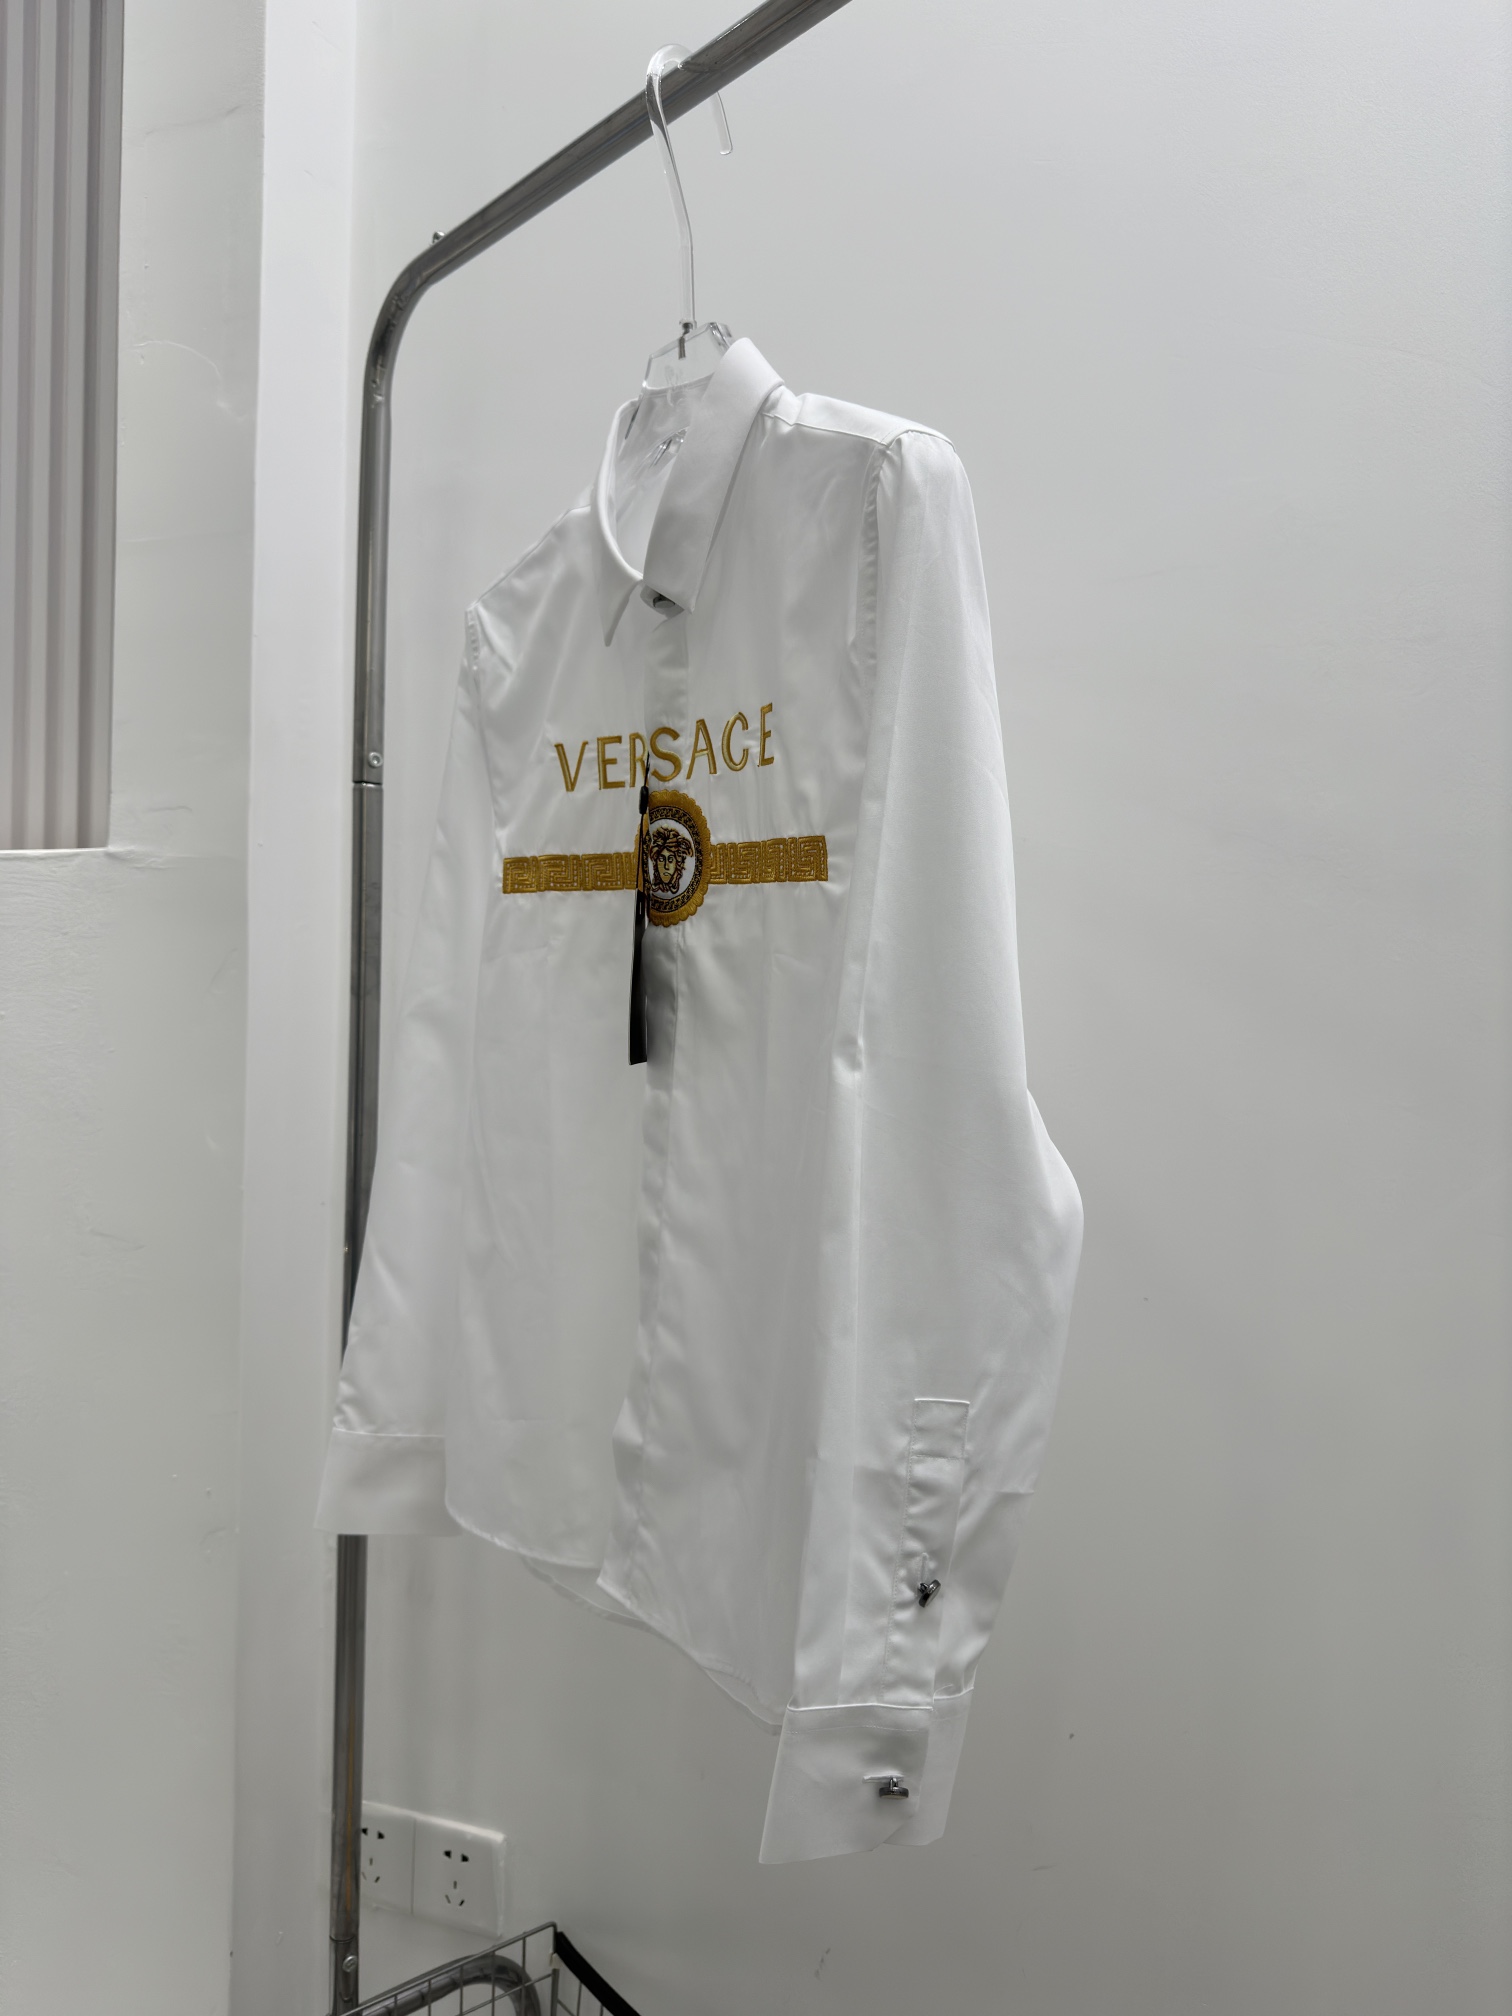 VerB新款男士衬衫十分高调的款式风格设计但是当别人窥探你品味之时却能让他为之一怔让我为大家介绍下此款衬